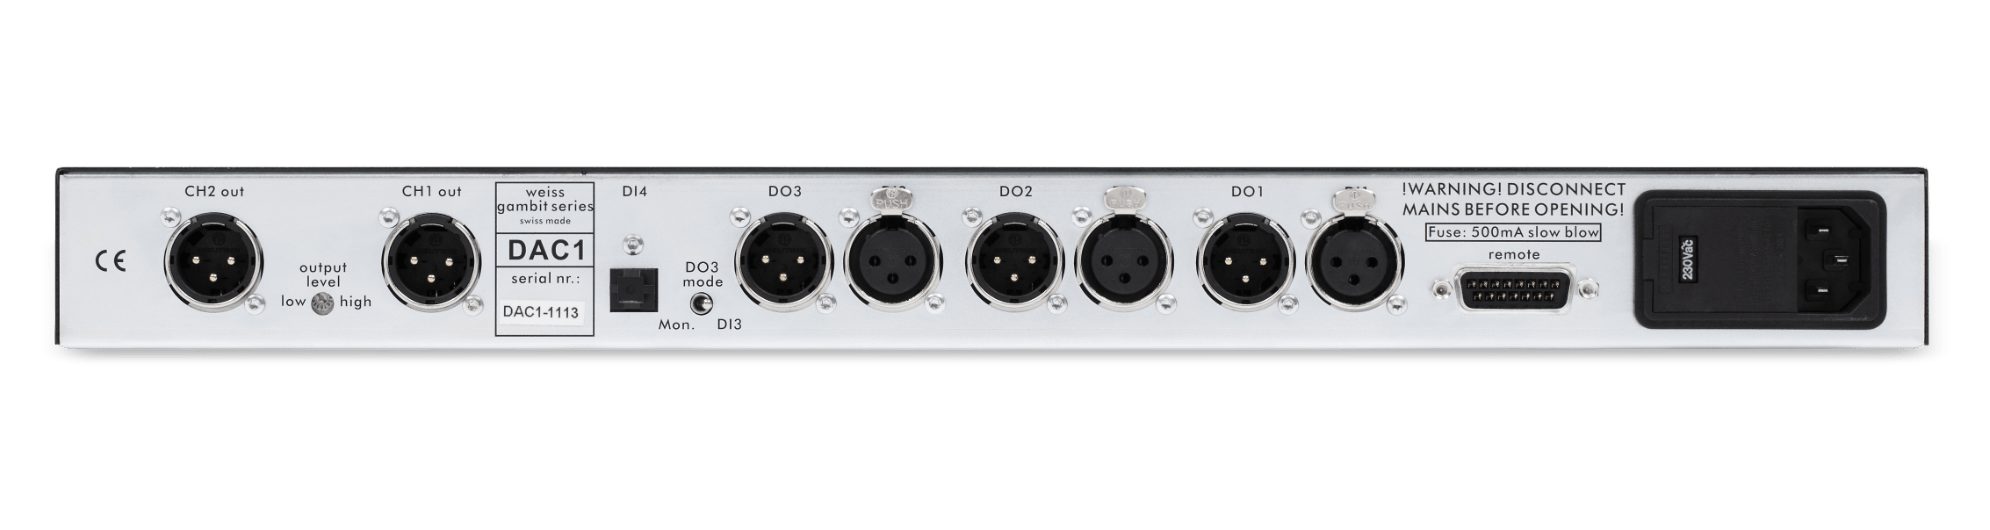 Weiss - Pro Audio - DAC 1 - Rear